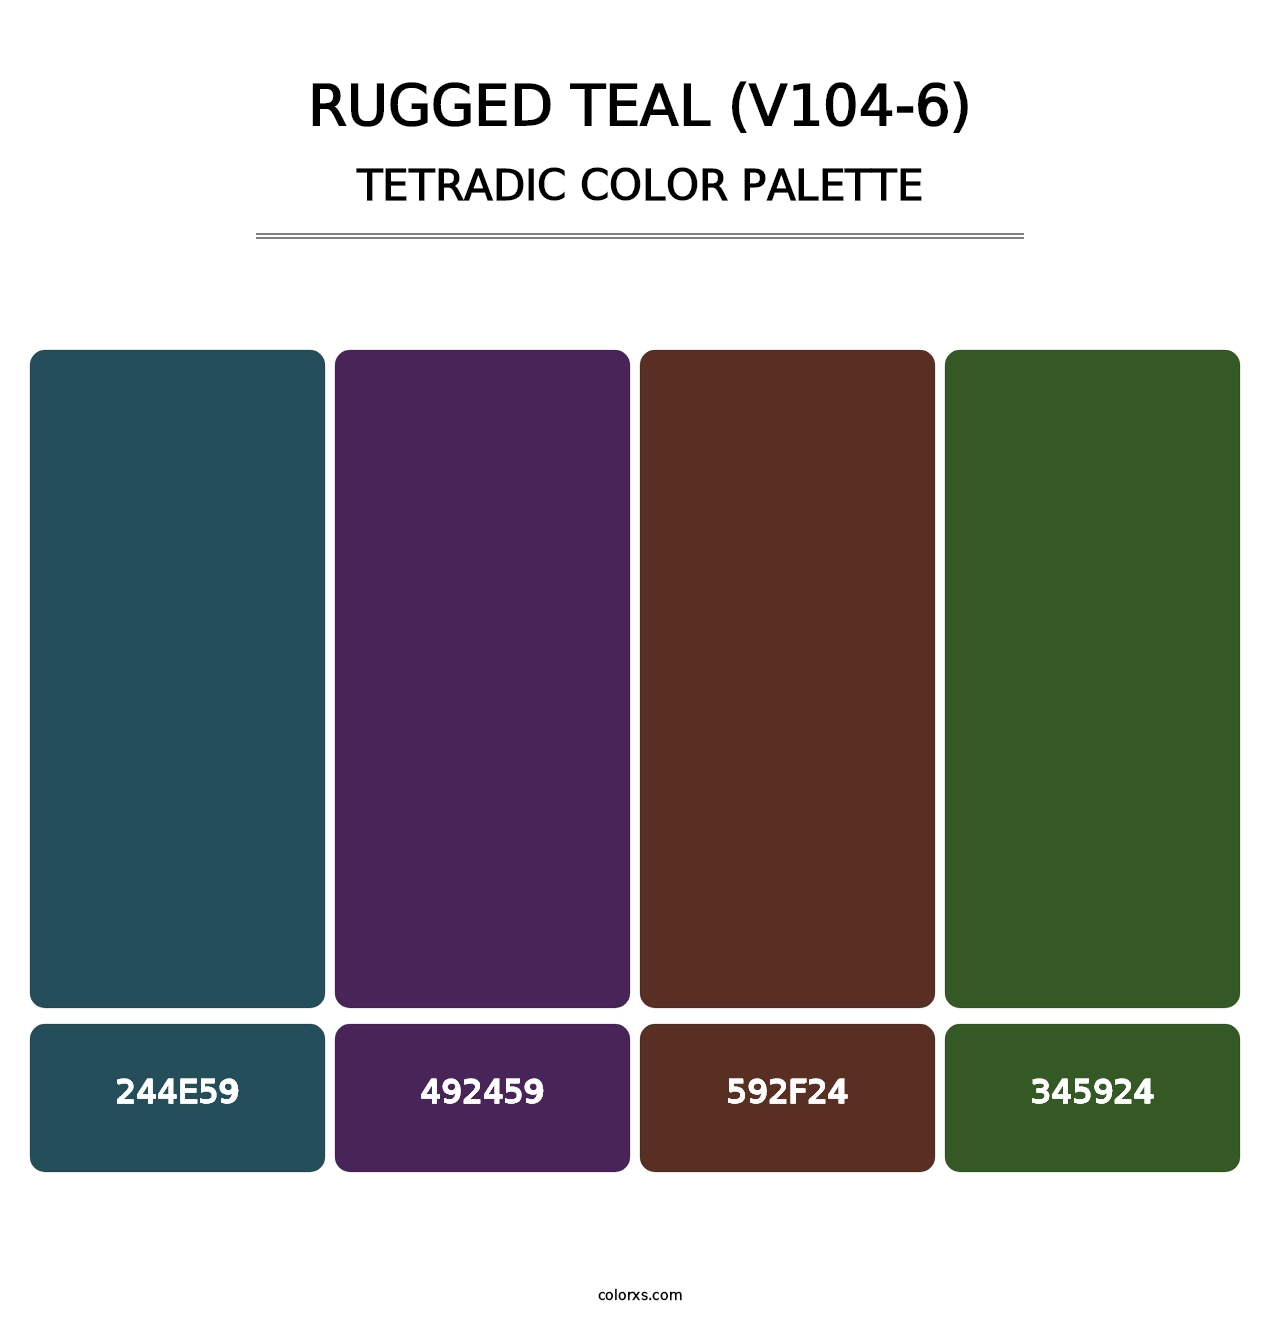 Rugged Teal (V104-6) - Tetradic Color Palette